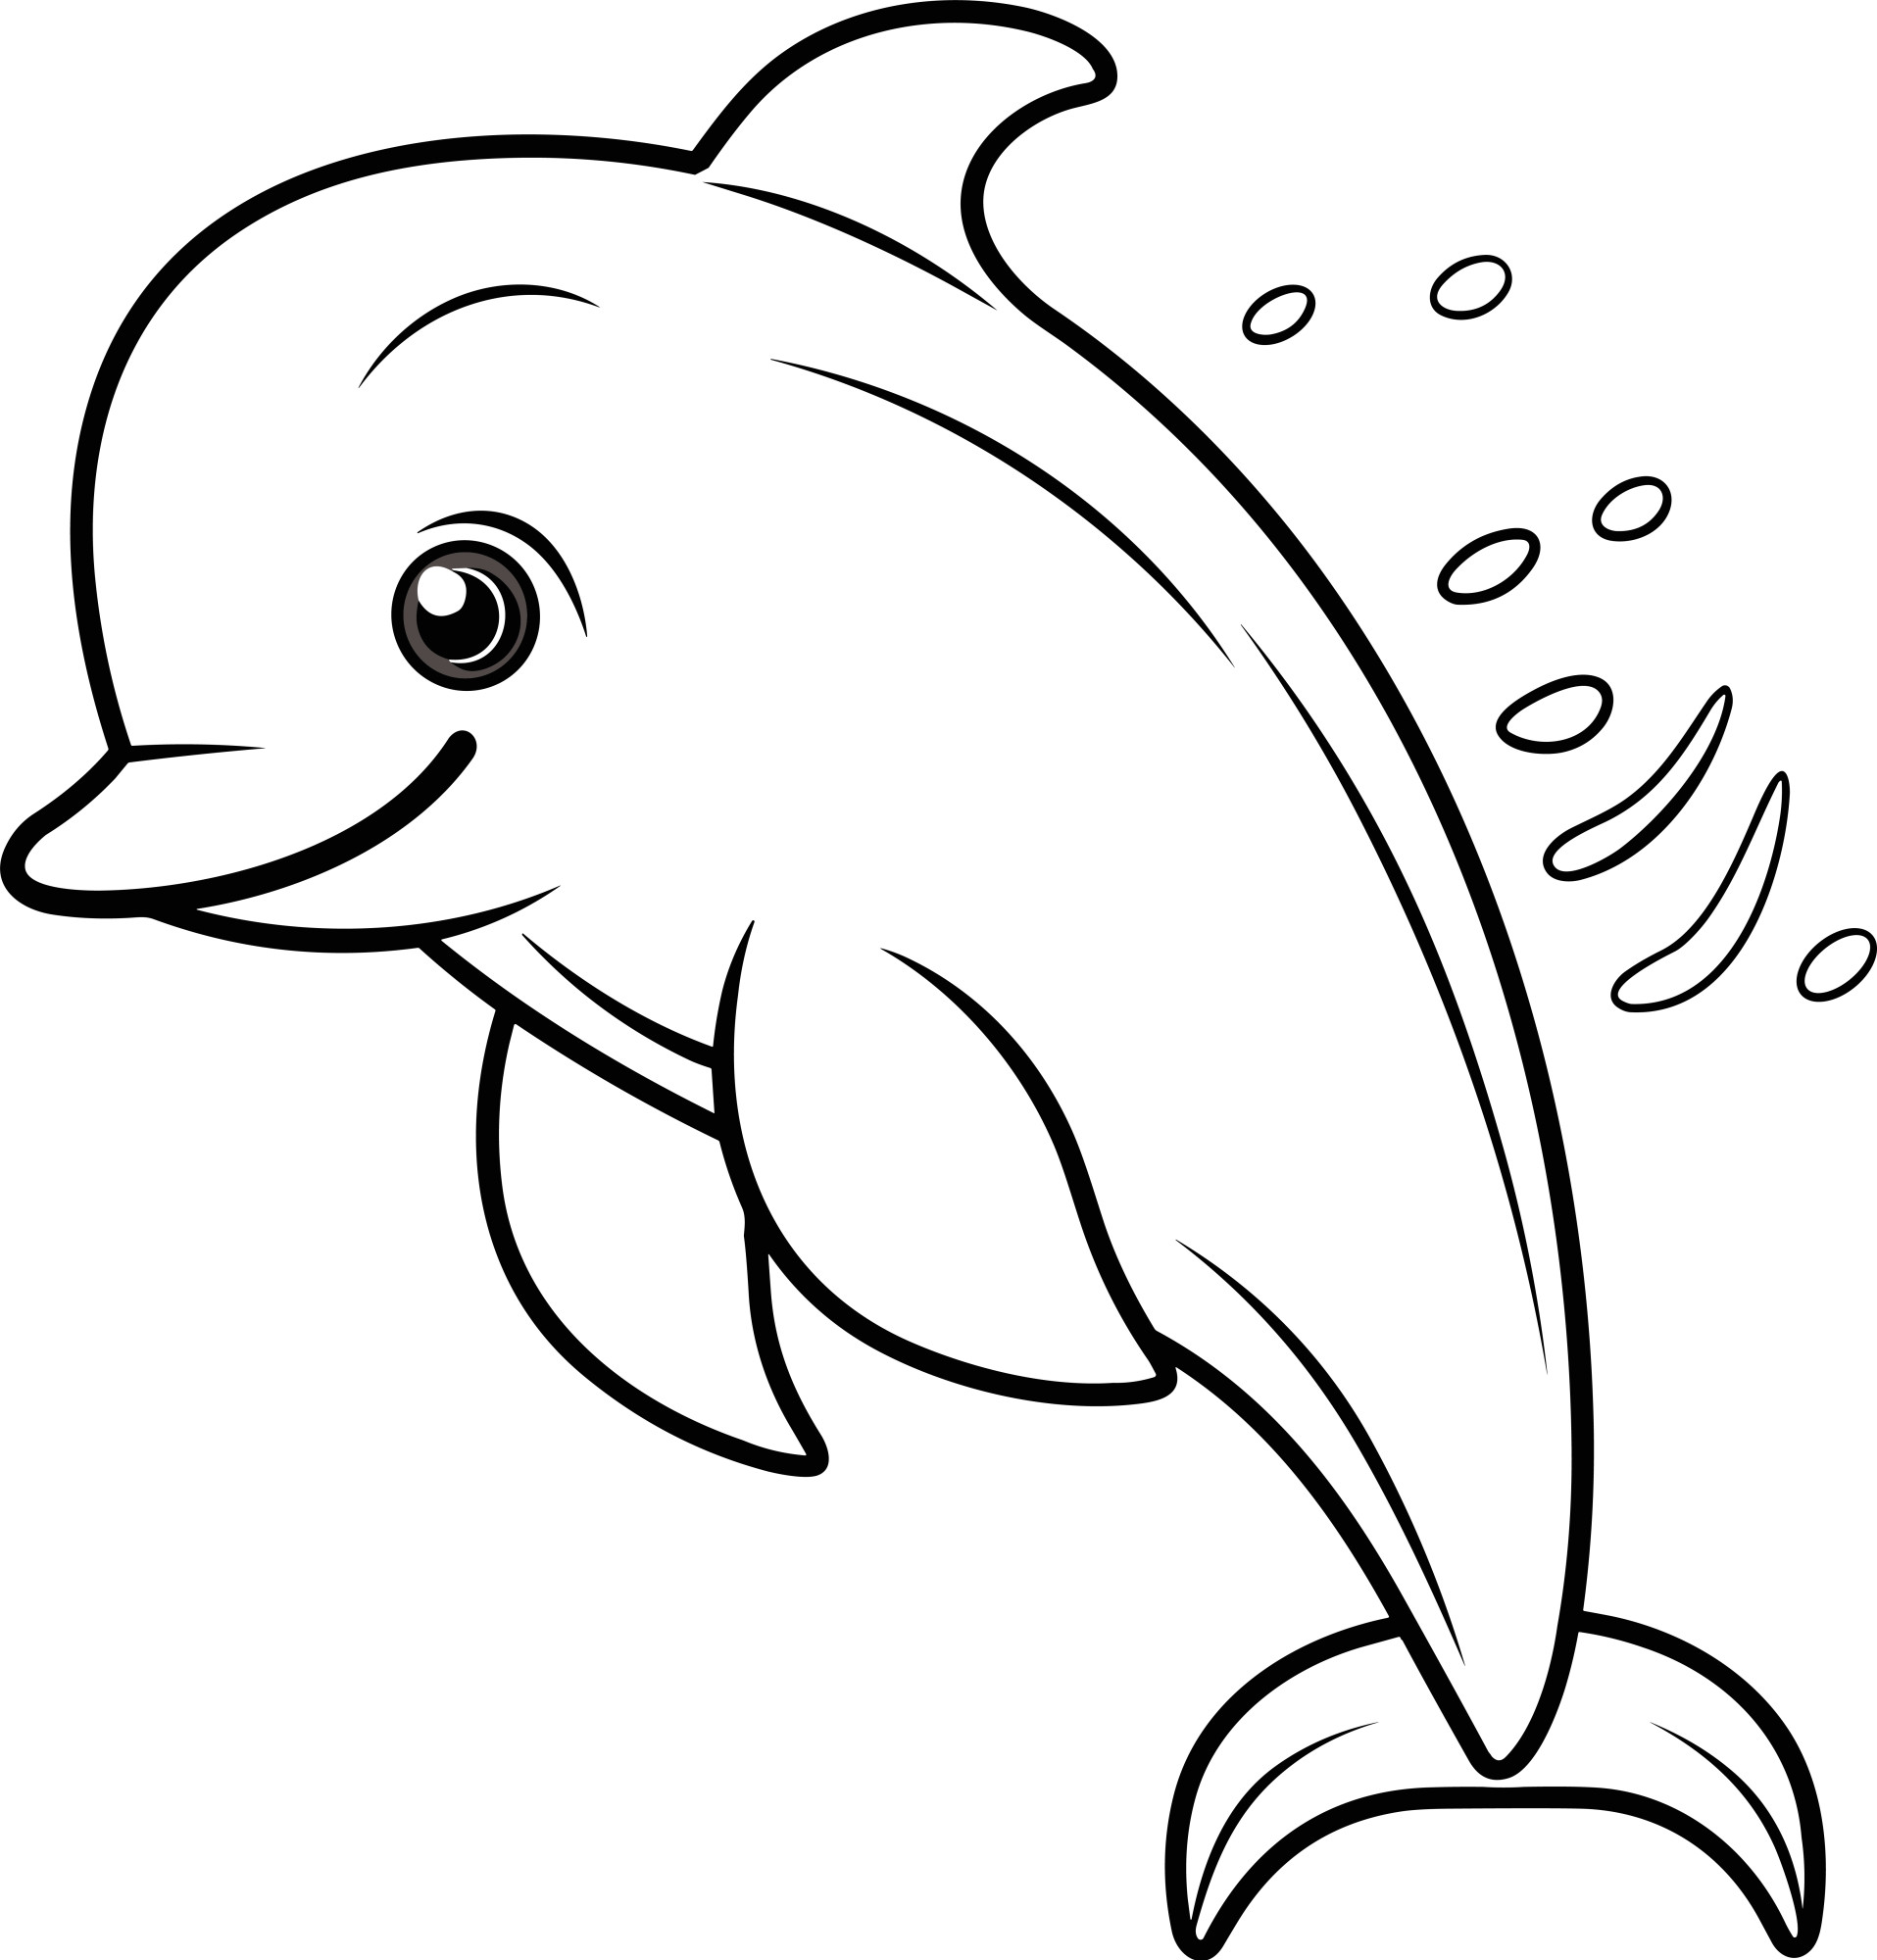 Раскраска для детей: дельфин выпрыгивает из воды